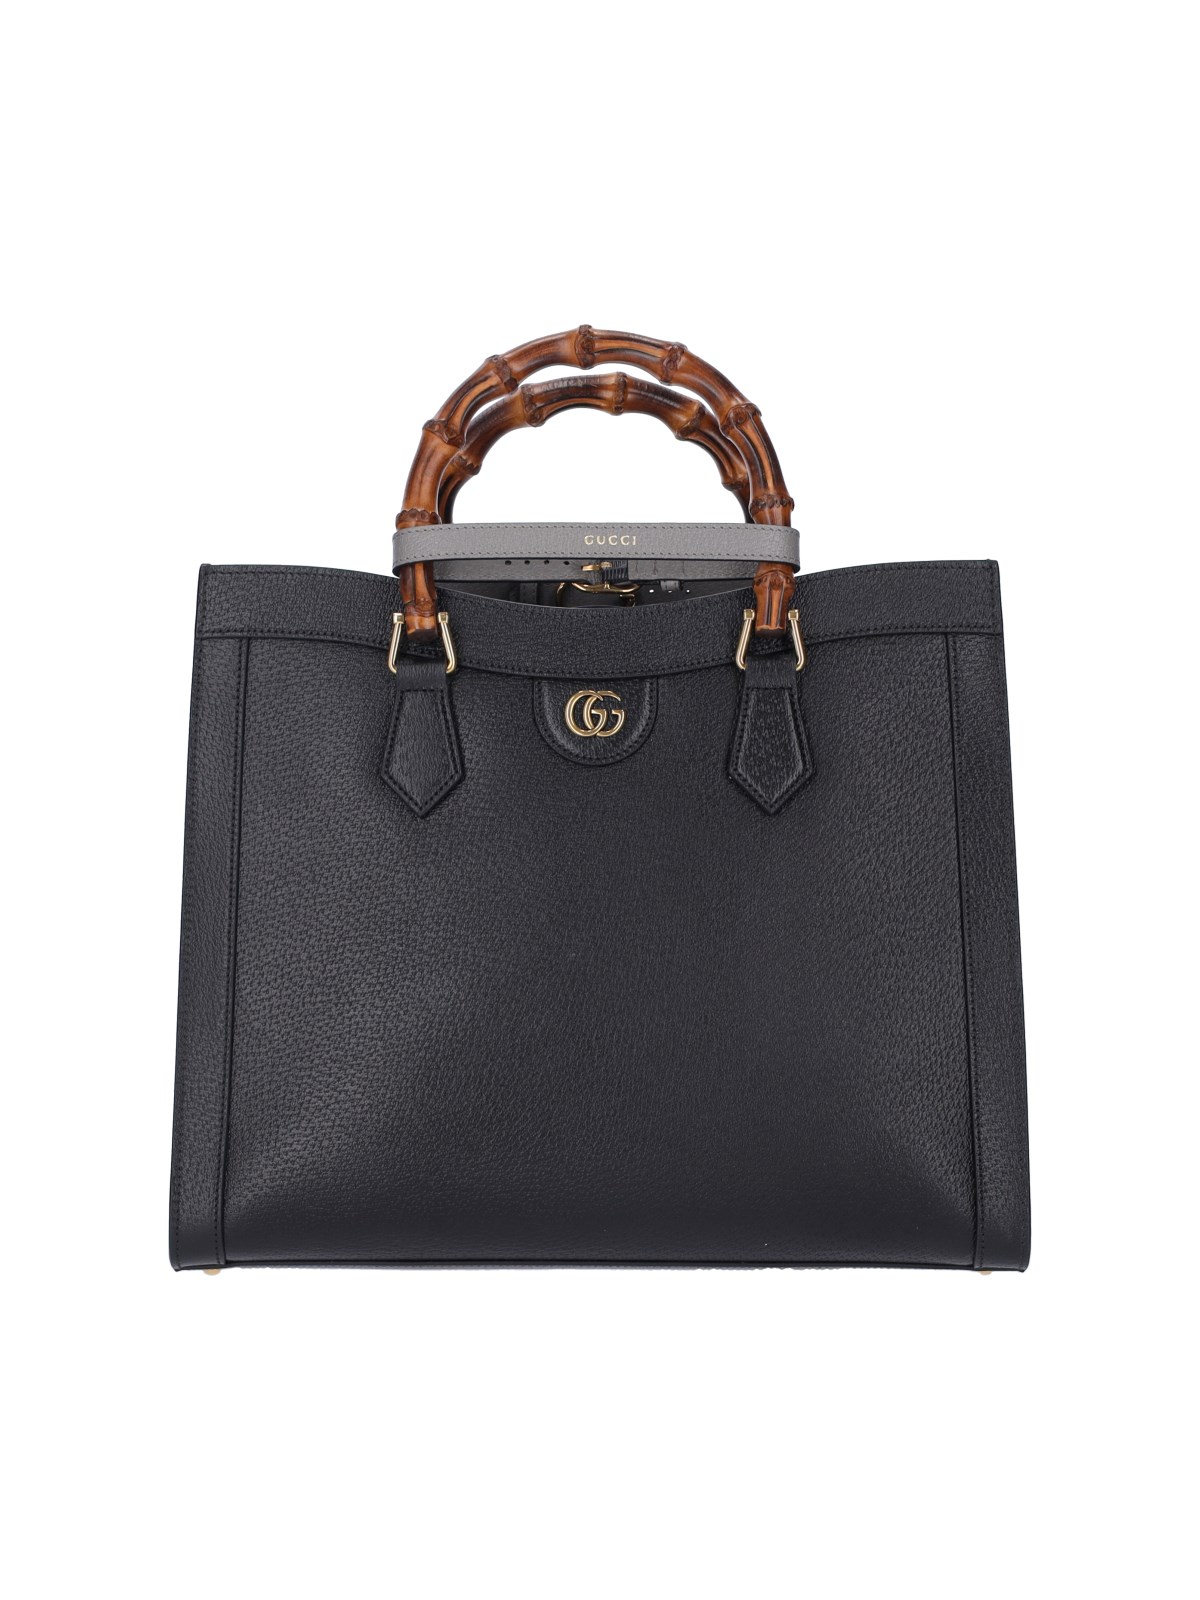 Gucci "diana" Medium Tote Bag In Black  